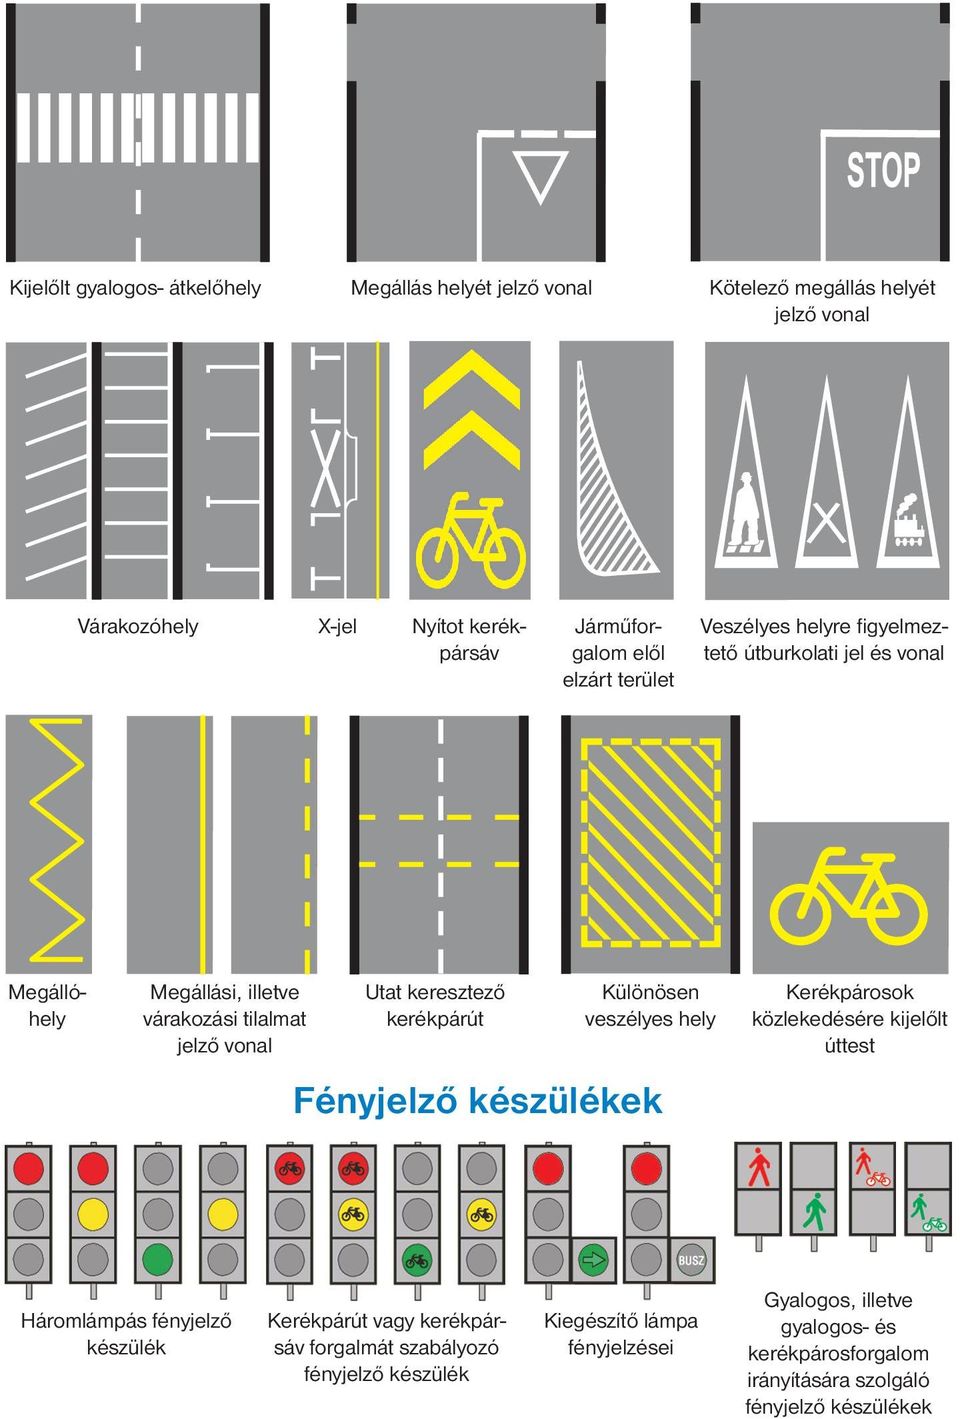 kerékpárút Különösen veszélyes hely Fényjelző készülékek Kerékpárosok közlekedésére kijelőlt úttest Háromlámpás fényjelző készülék Kerékpárút vagy